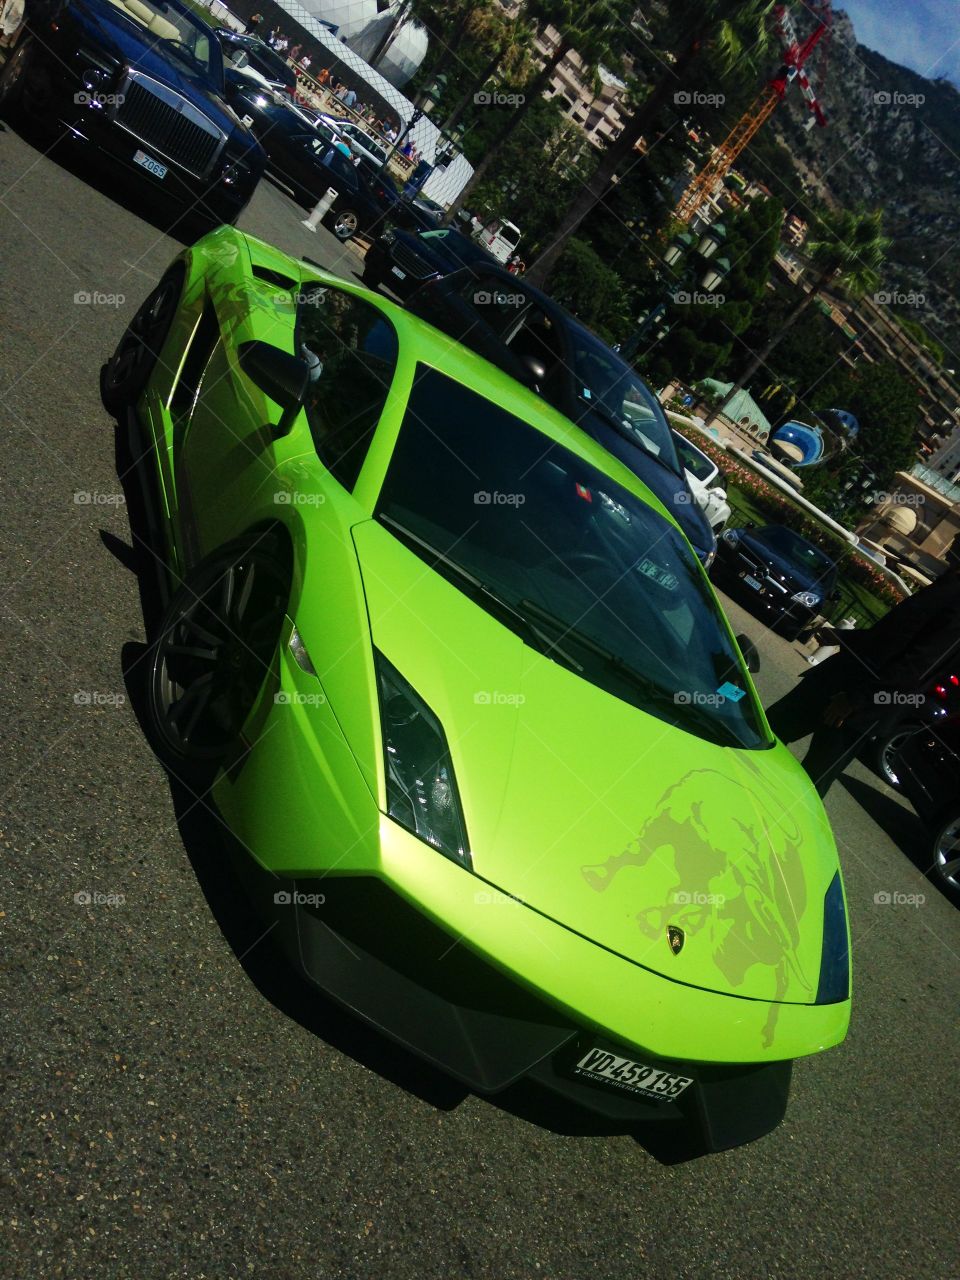 Green Lamborghini in Europe  